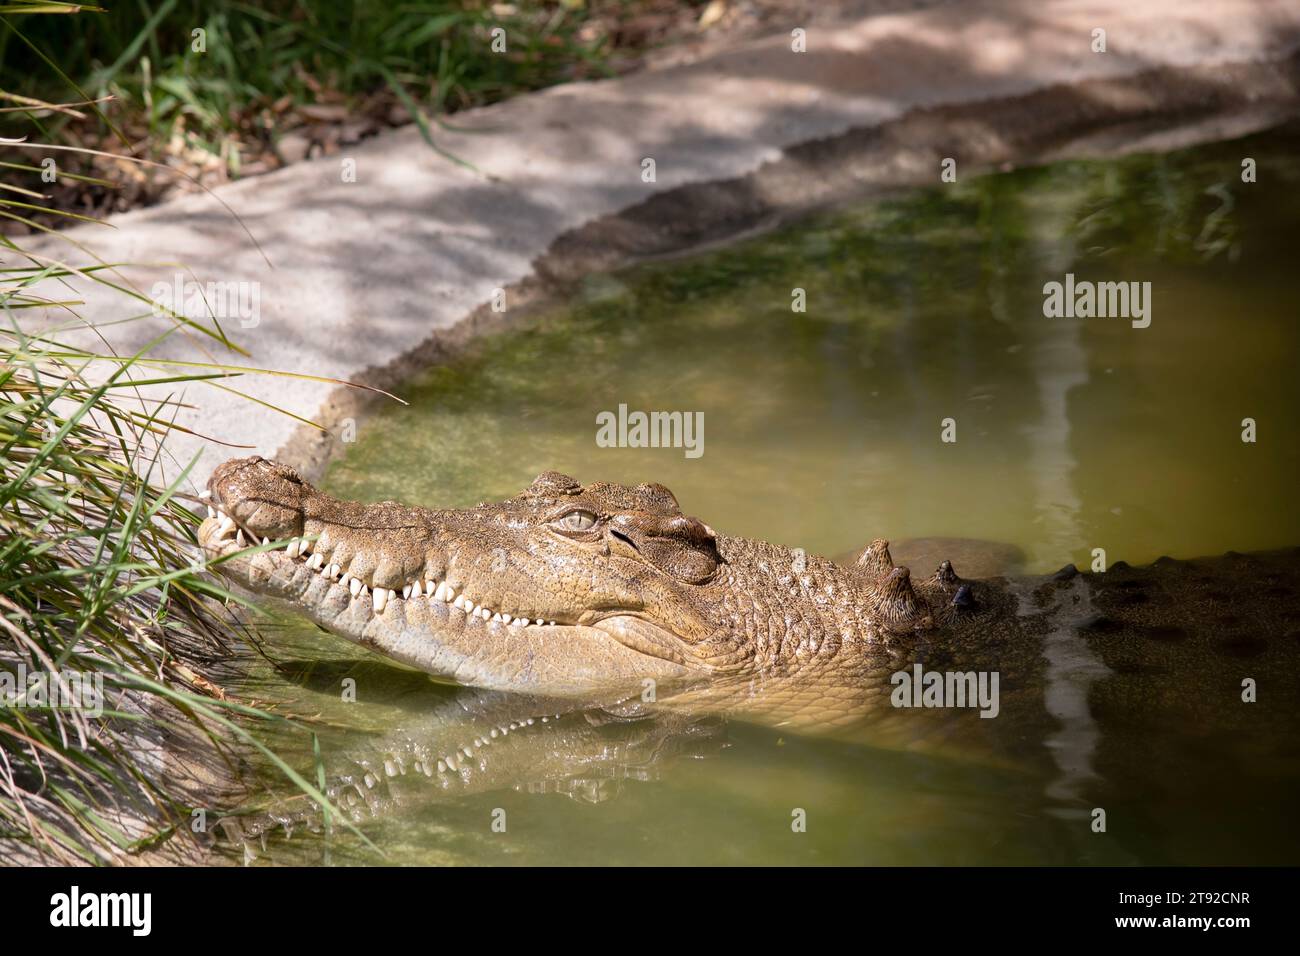 Les crocodiles d'eau douce sont gris ou brun olive avec des marbrures foncées déchiquetées. Un crocodile d'eau douce peut être distingué d'un crocodile estuarien par elle Banque D'Images